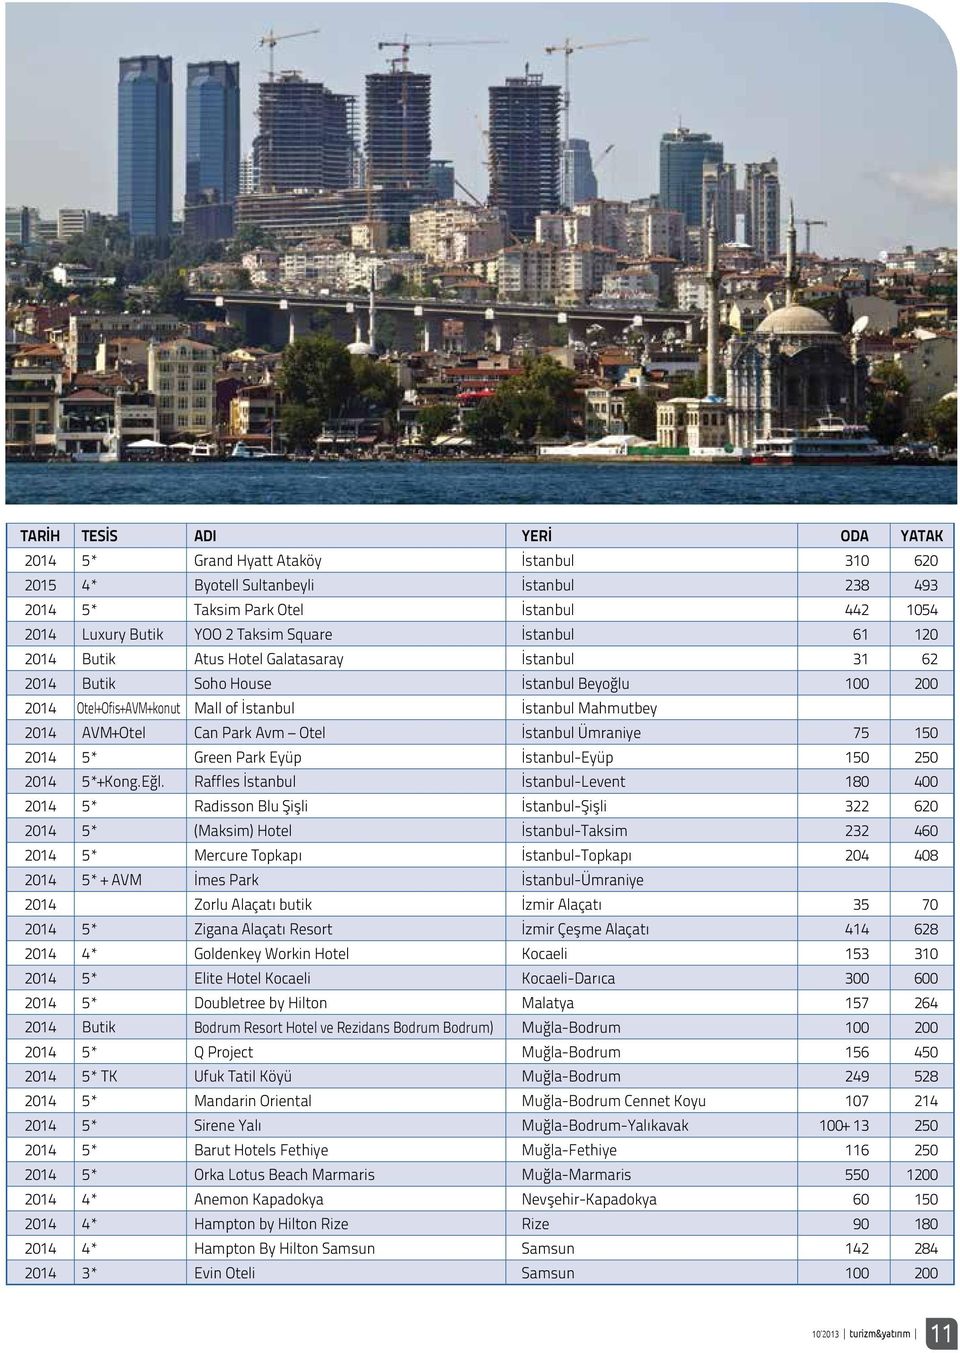 Park Avm Otel İstanbul Ümraniye 75 150 2014 5* Green Park Eyüp İstanbul-Eyüp 150 250 2014 5*+Kong.Eğl.